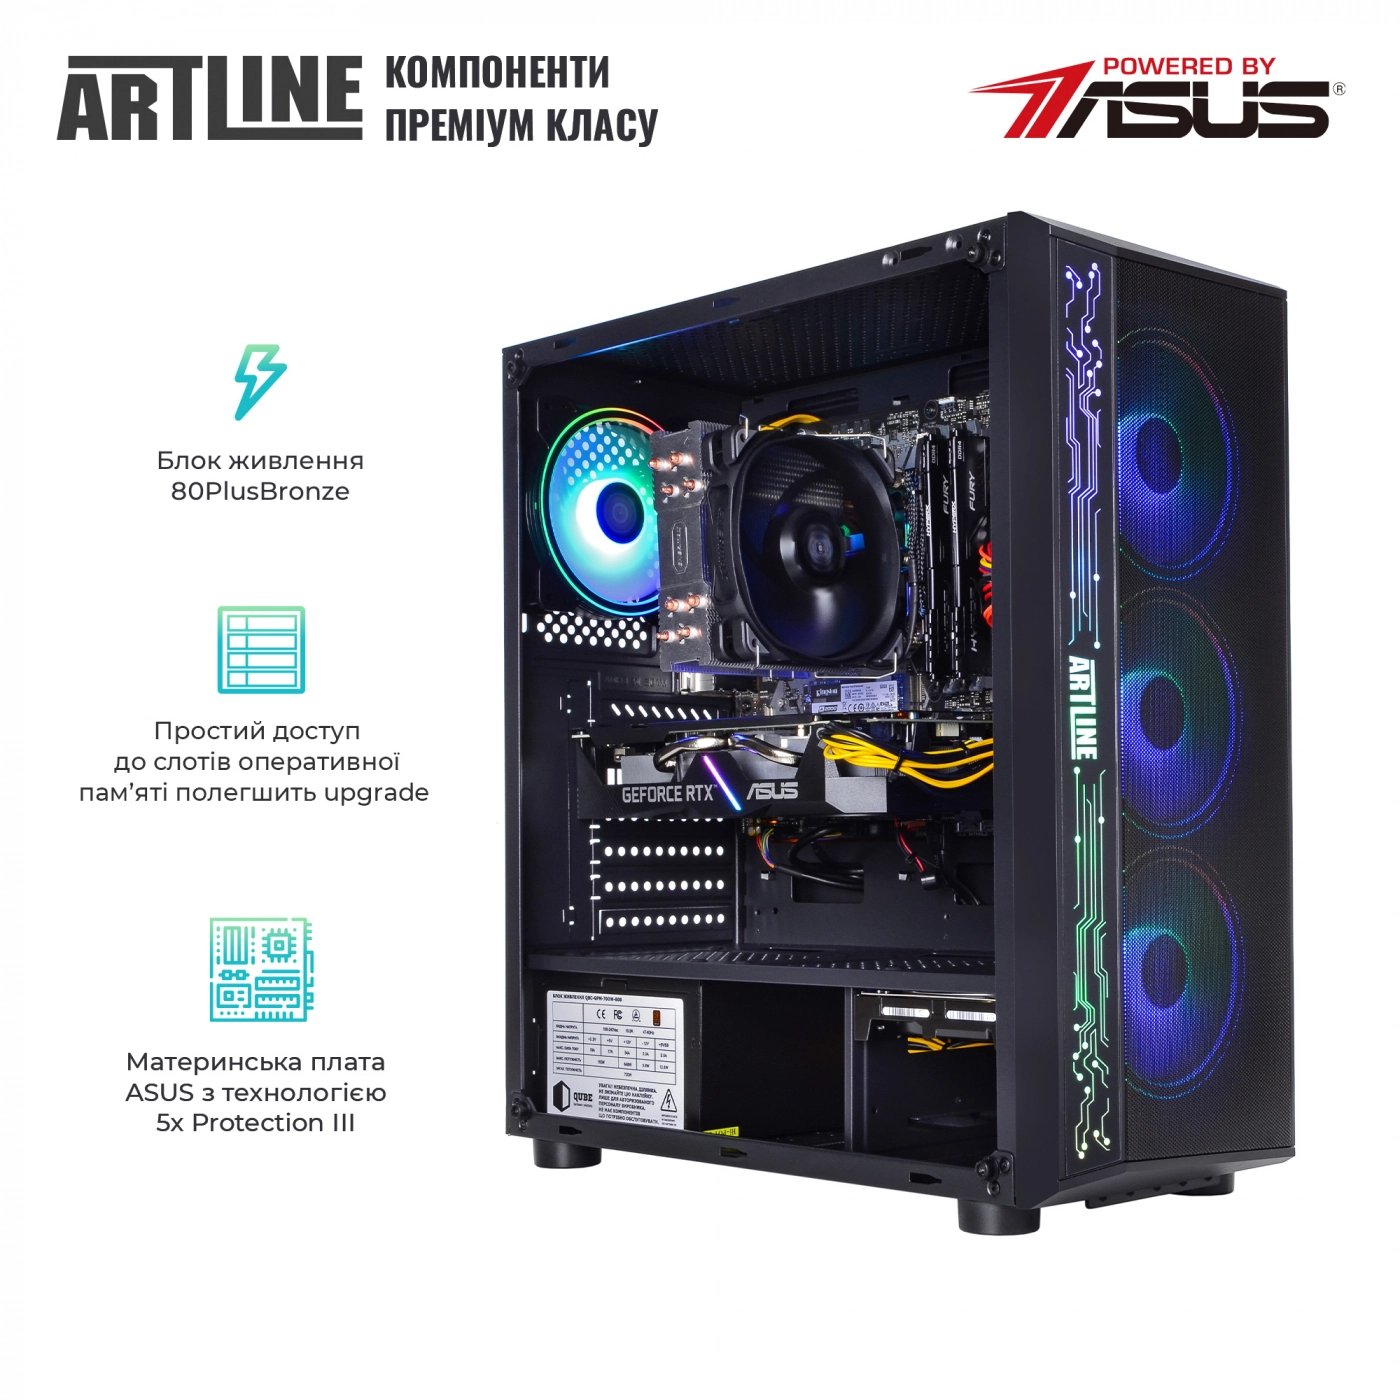 Купить Компьютер ARTLINE Gaming X54v02 - фото 2